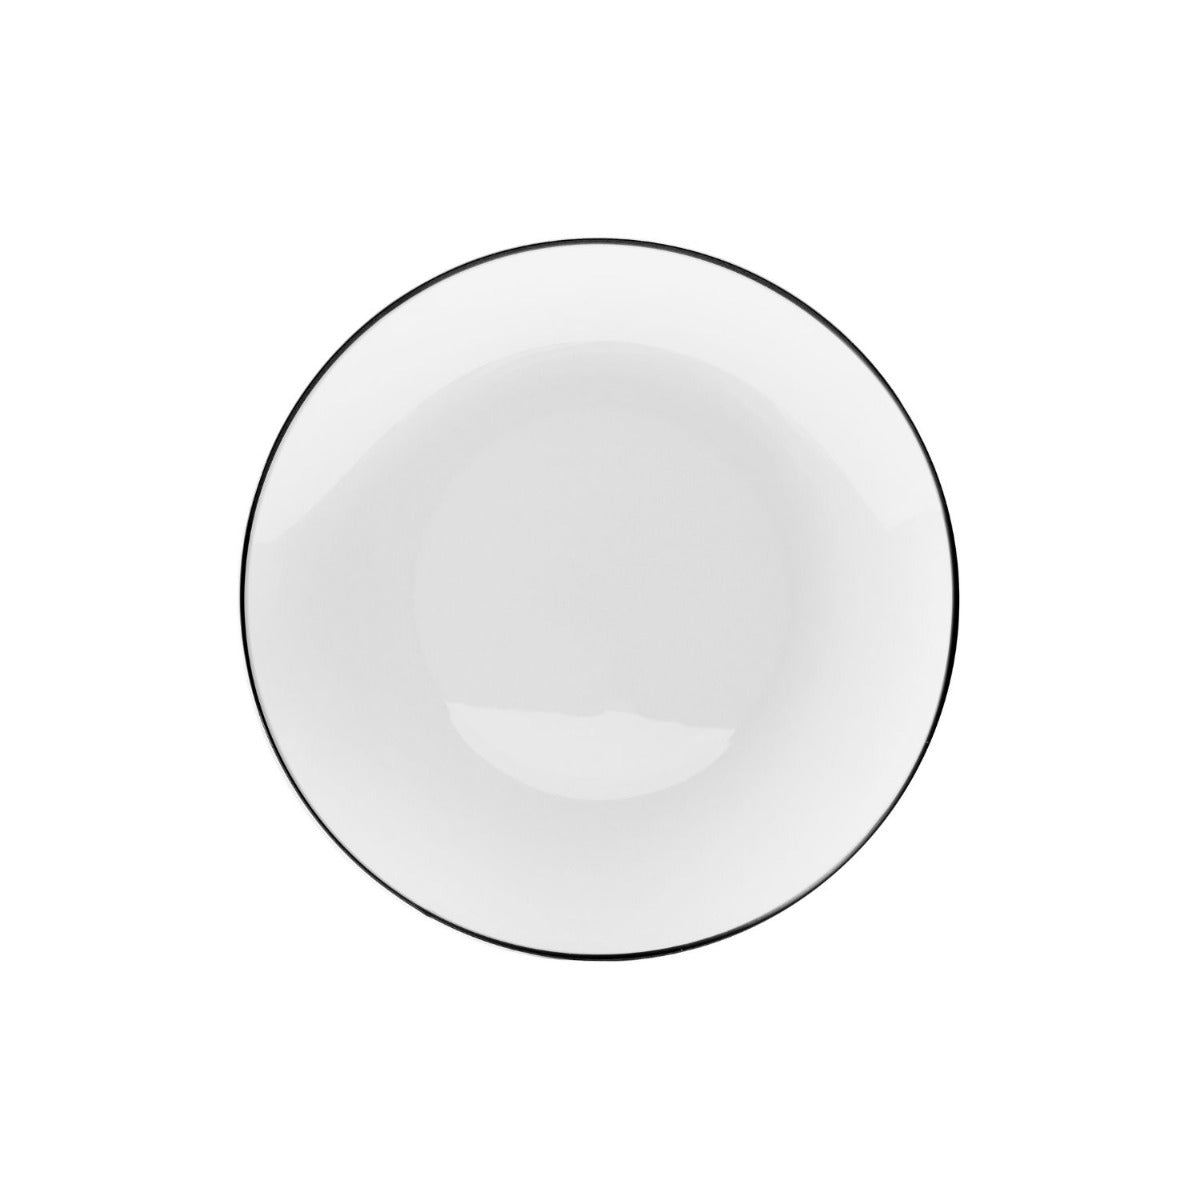 8" White & Black Rim Design Plastic Plates (120 Count)